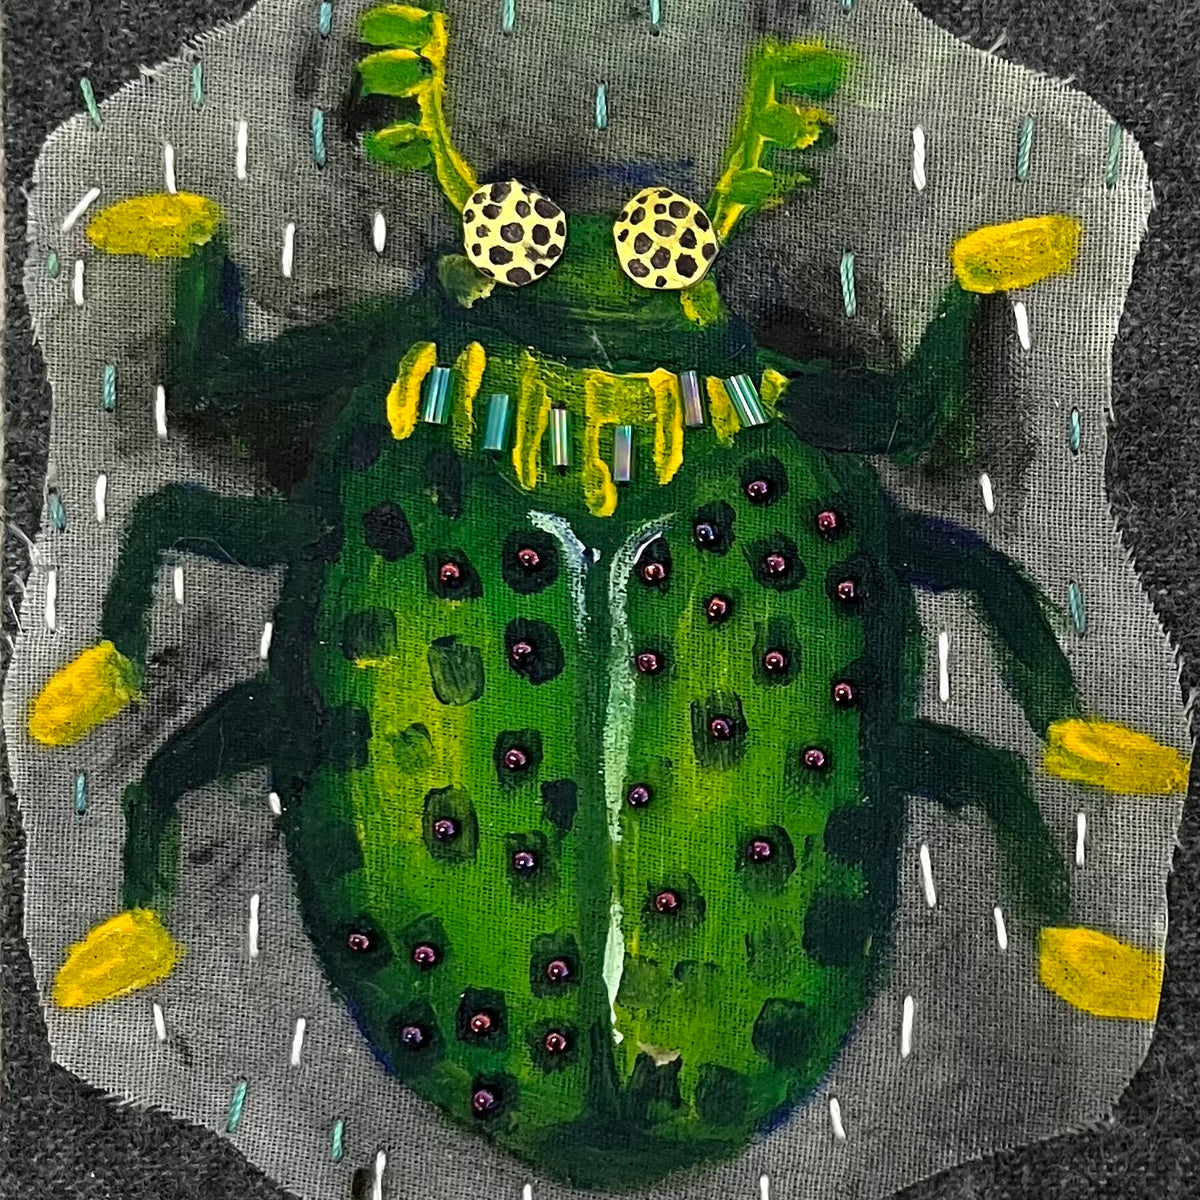 Bug Art Beetle - OOAK Handmade  Mixed Media - by Artist Sadie Rothenberg